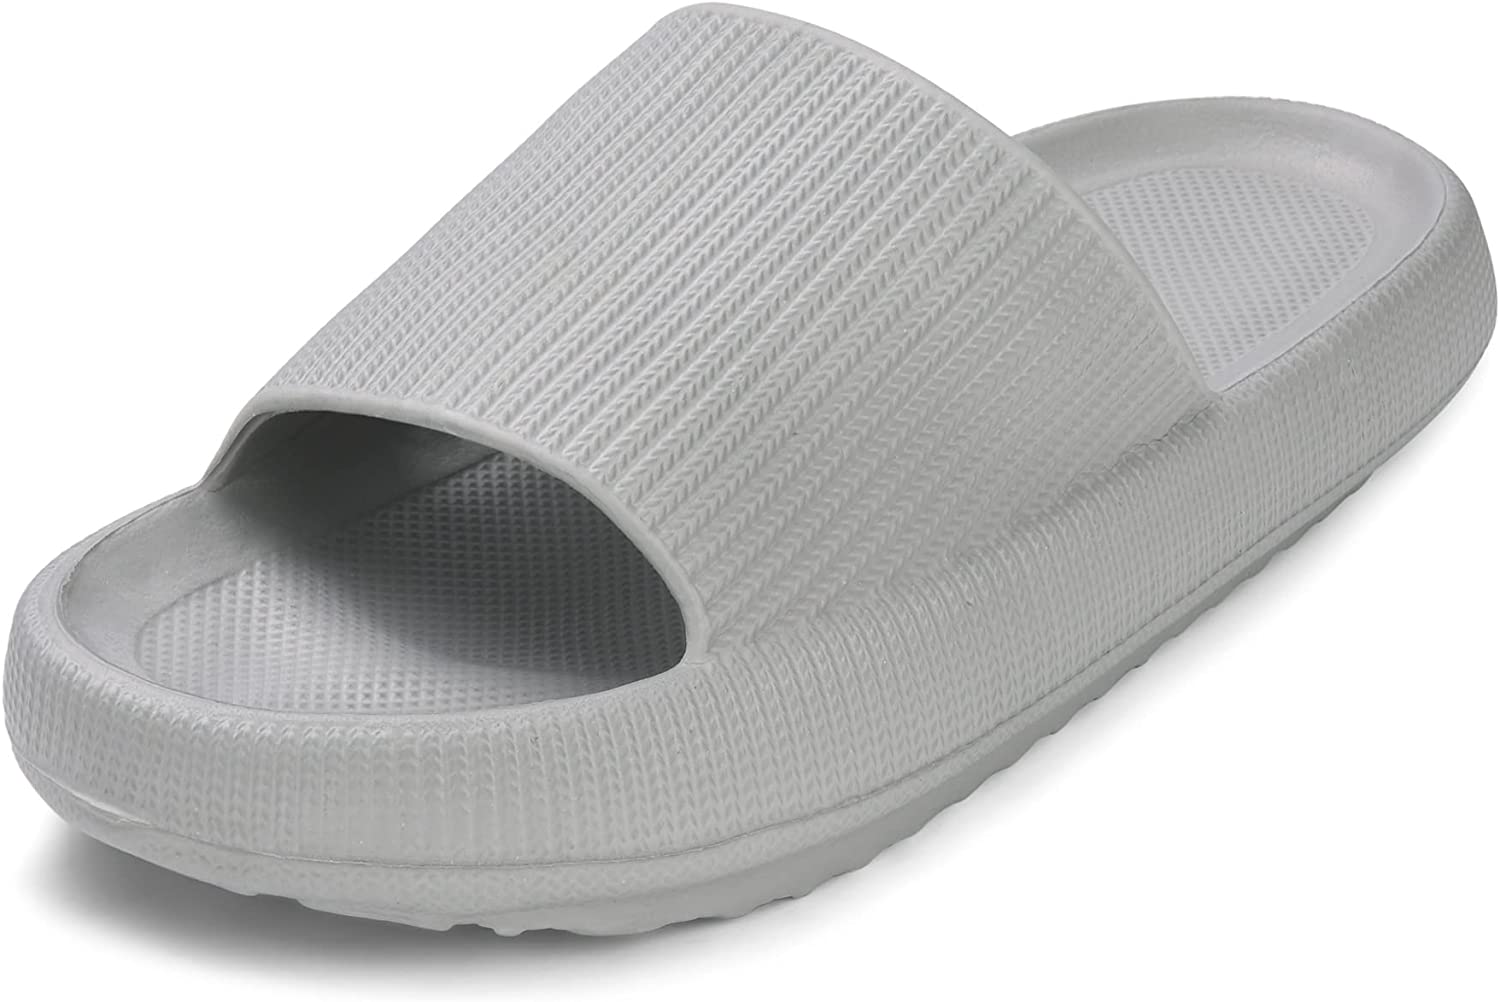 Tahiti Græder Vejrtrækning VONMAY Cloud Slides Slippers for Women Men Shower Sandals Quick Drying Non  Slip | eBay